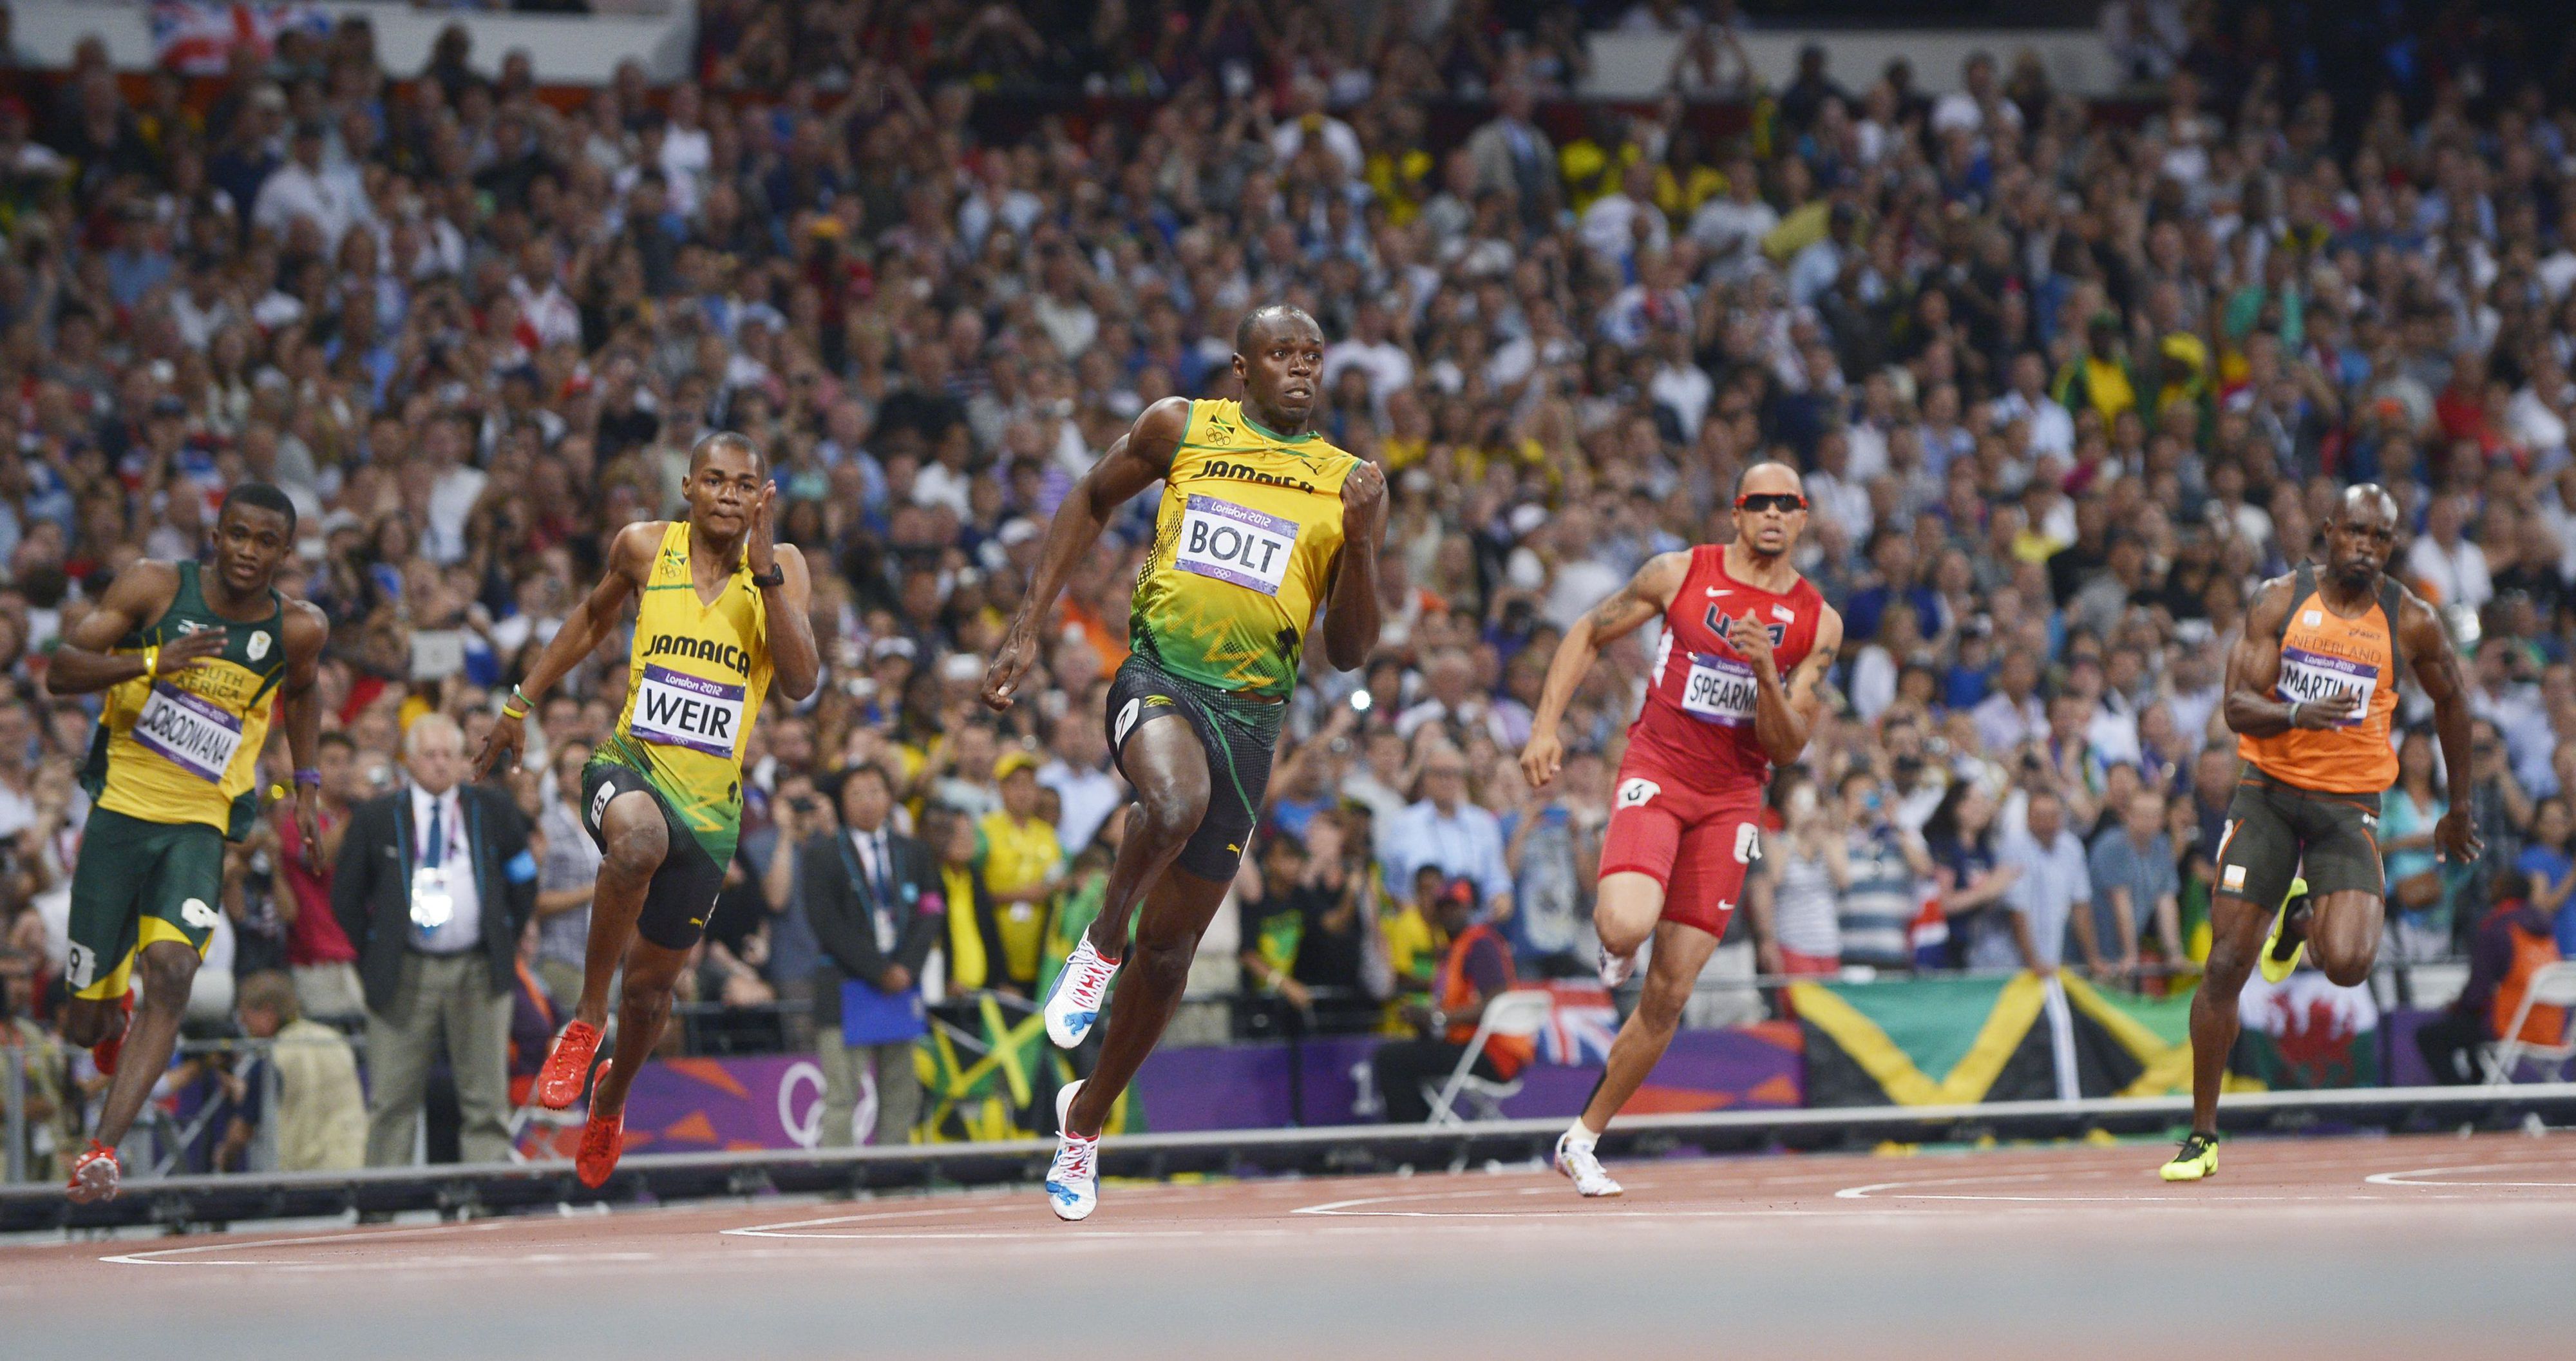 Jamaikalle kolmoisvoitto - Bolt juoksi toisen olympiakullan | Kaleva